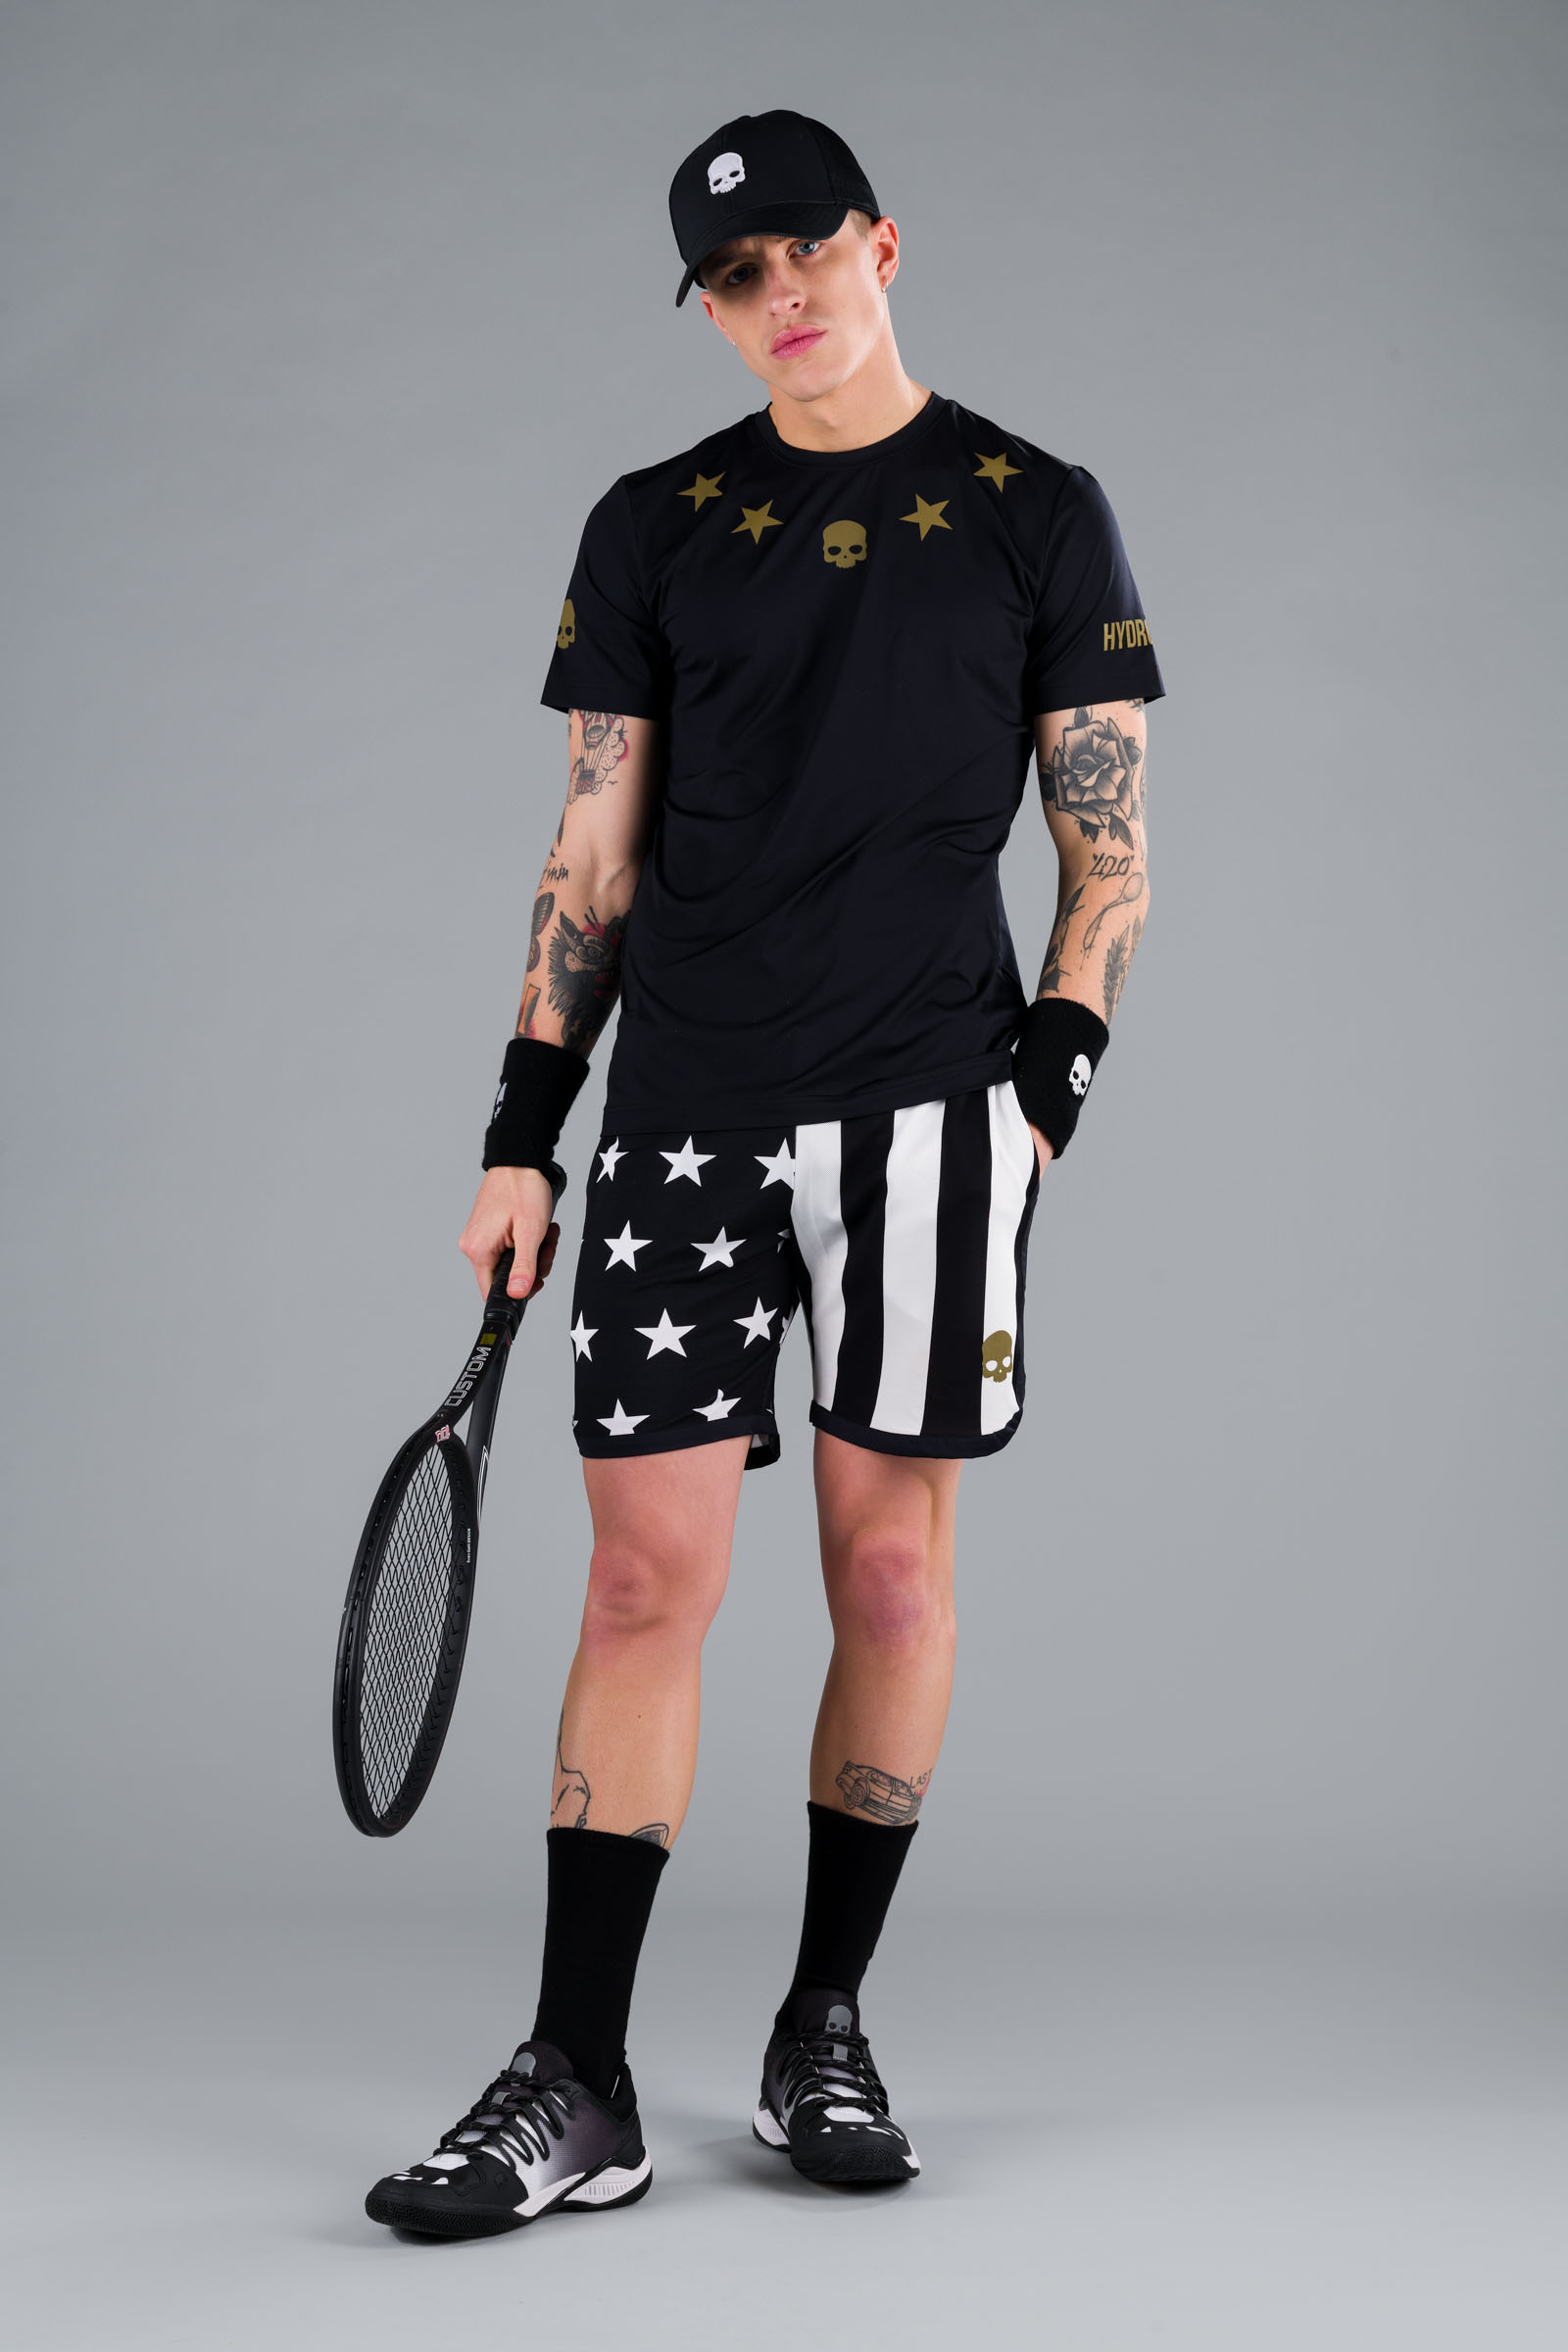 STAR TECH TEE - BLACK/GOLD - Abbigliamento sportivo | Hydrogen